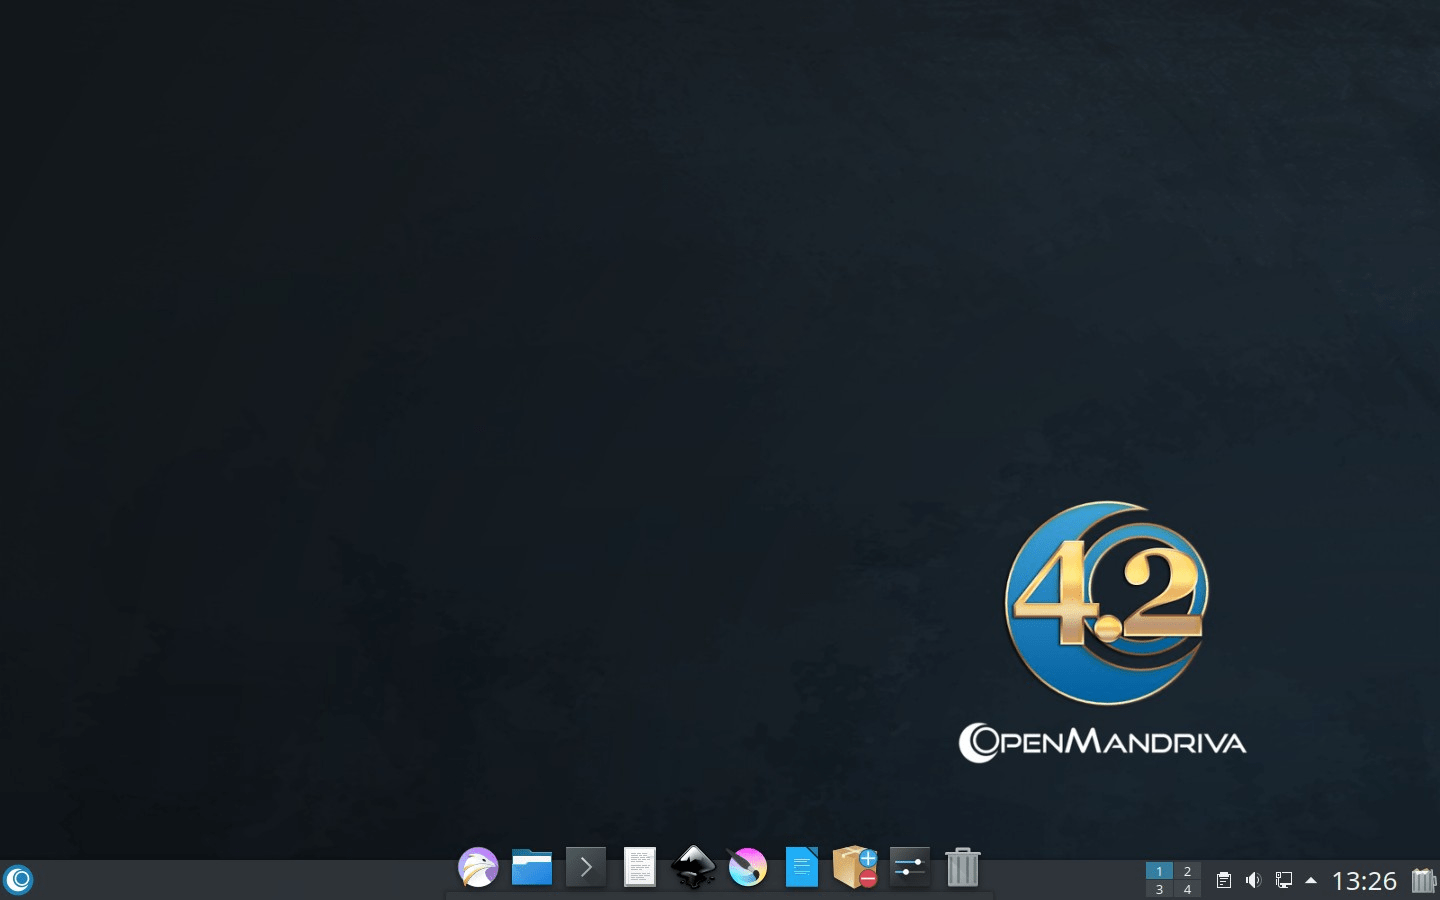 OpenMandriva Lx 4.2 auf Basis von Linux 5.10.3 mit KDE Plasma 5.20.4